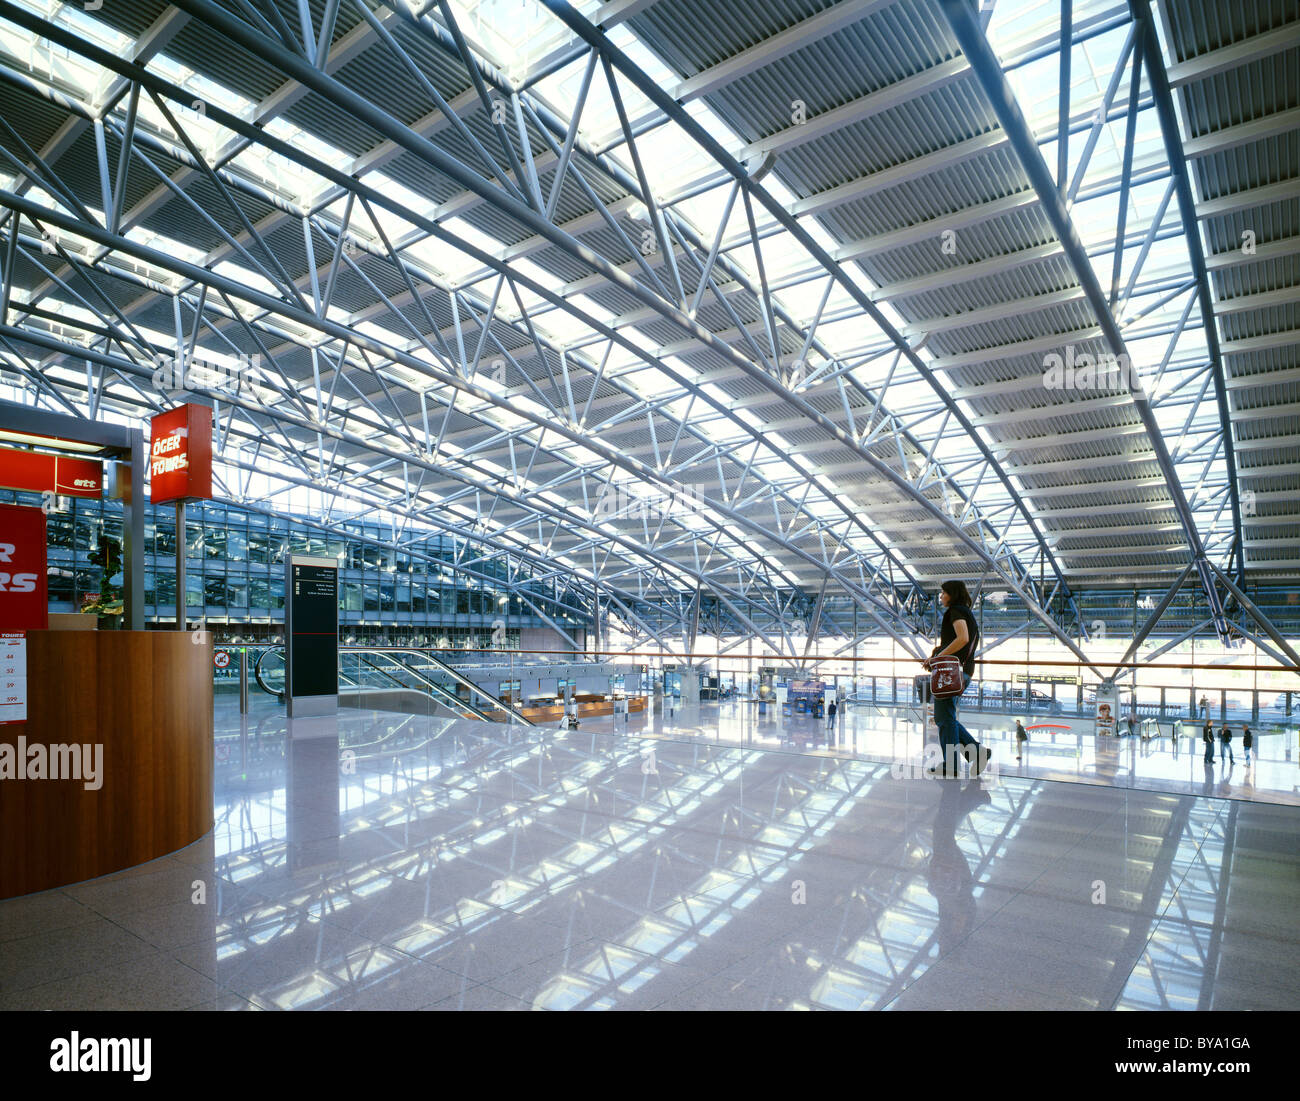 Hamburg Airport "Terminal 1", Hamburg, Germany, Europe Stock Photo